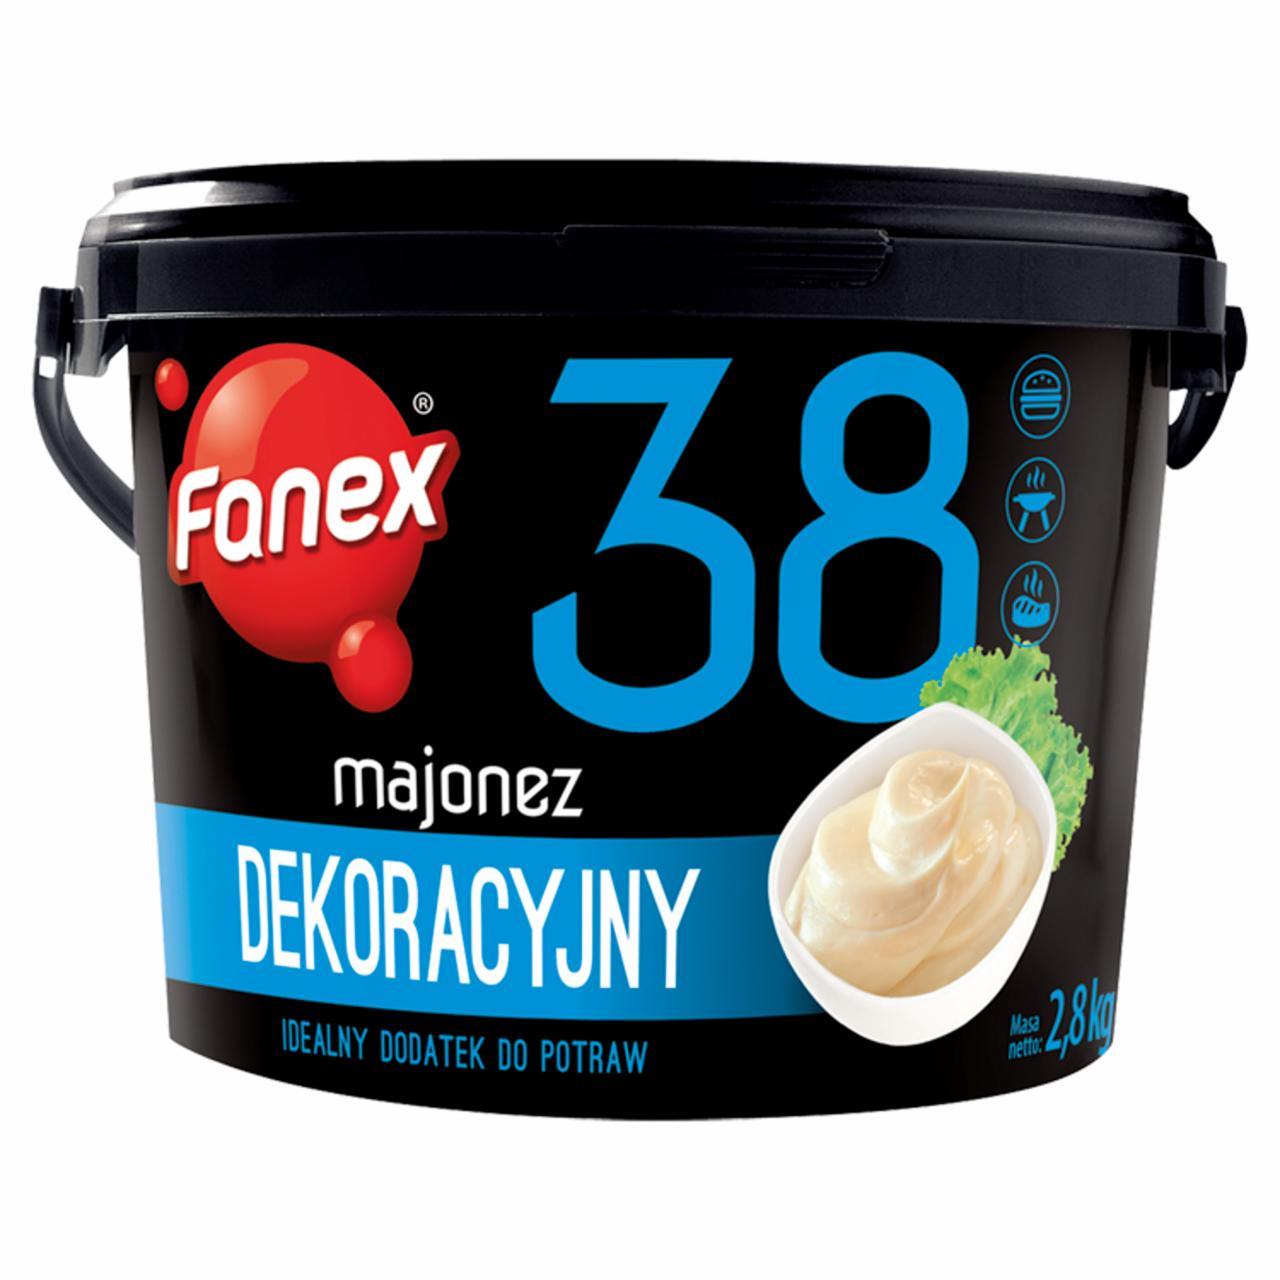 Zdjęcia - Fanex Majonez dekoracyjny 2,8 kg